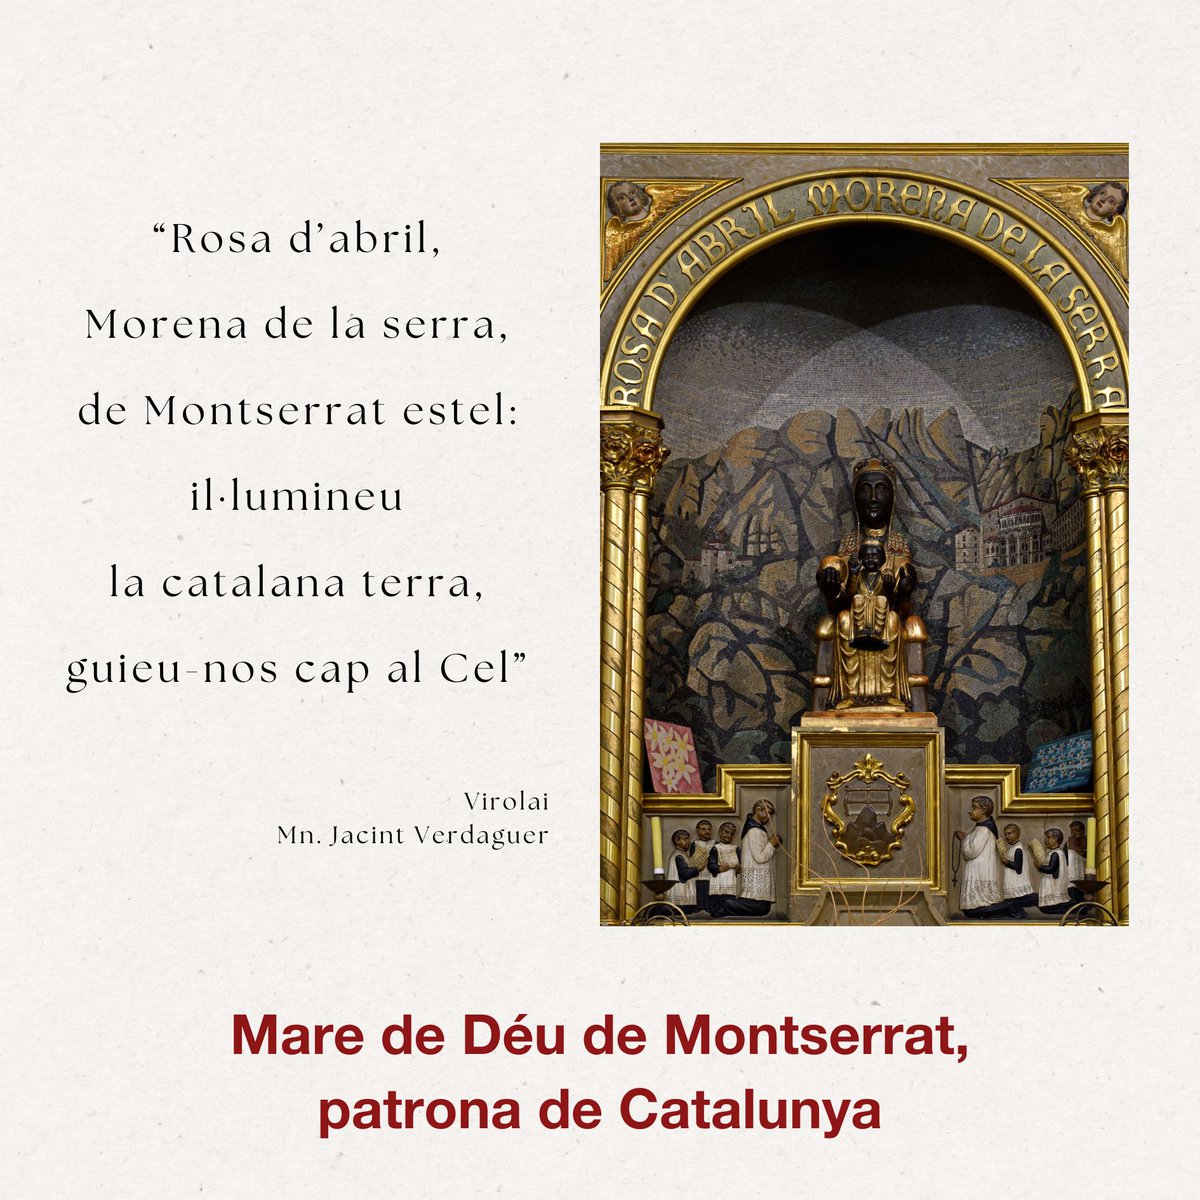 Avui celebrem la Diada de la Mare de Déu de Montserrat #PatronadeCatalunya. La fotografia d’aquesta publicació és del Convent dels Caputxins de Palma. D’imatges i devoció per la Moreneta n’hi ha arreu de la Nació Catalana, i també a l’estranger gràcies als catalans de la diàspora